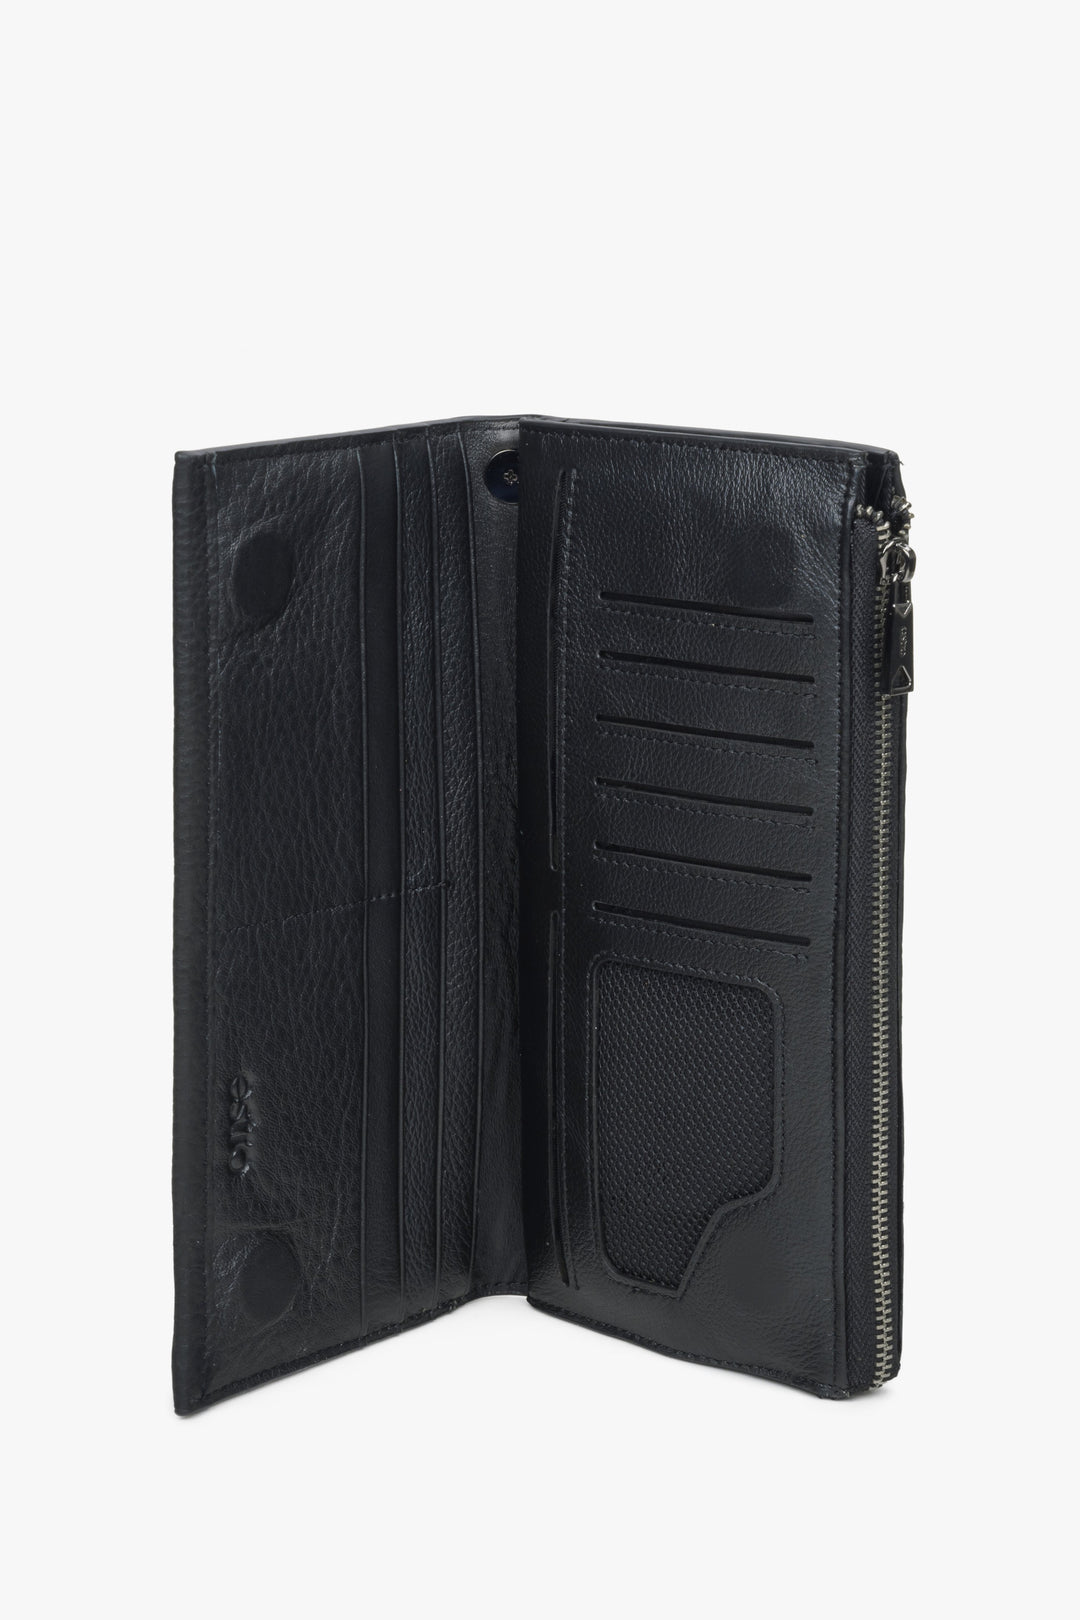 Skórzany pojemny portfel męski Estro - wnętrze modelu.